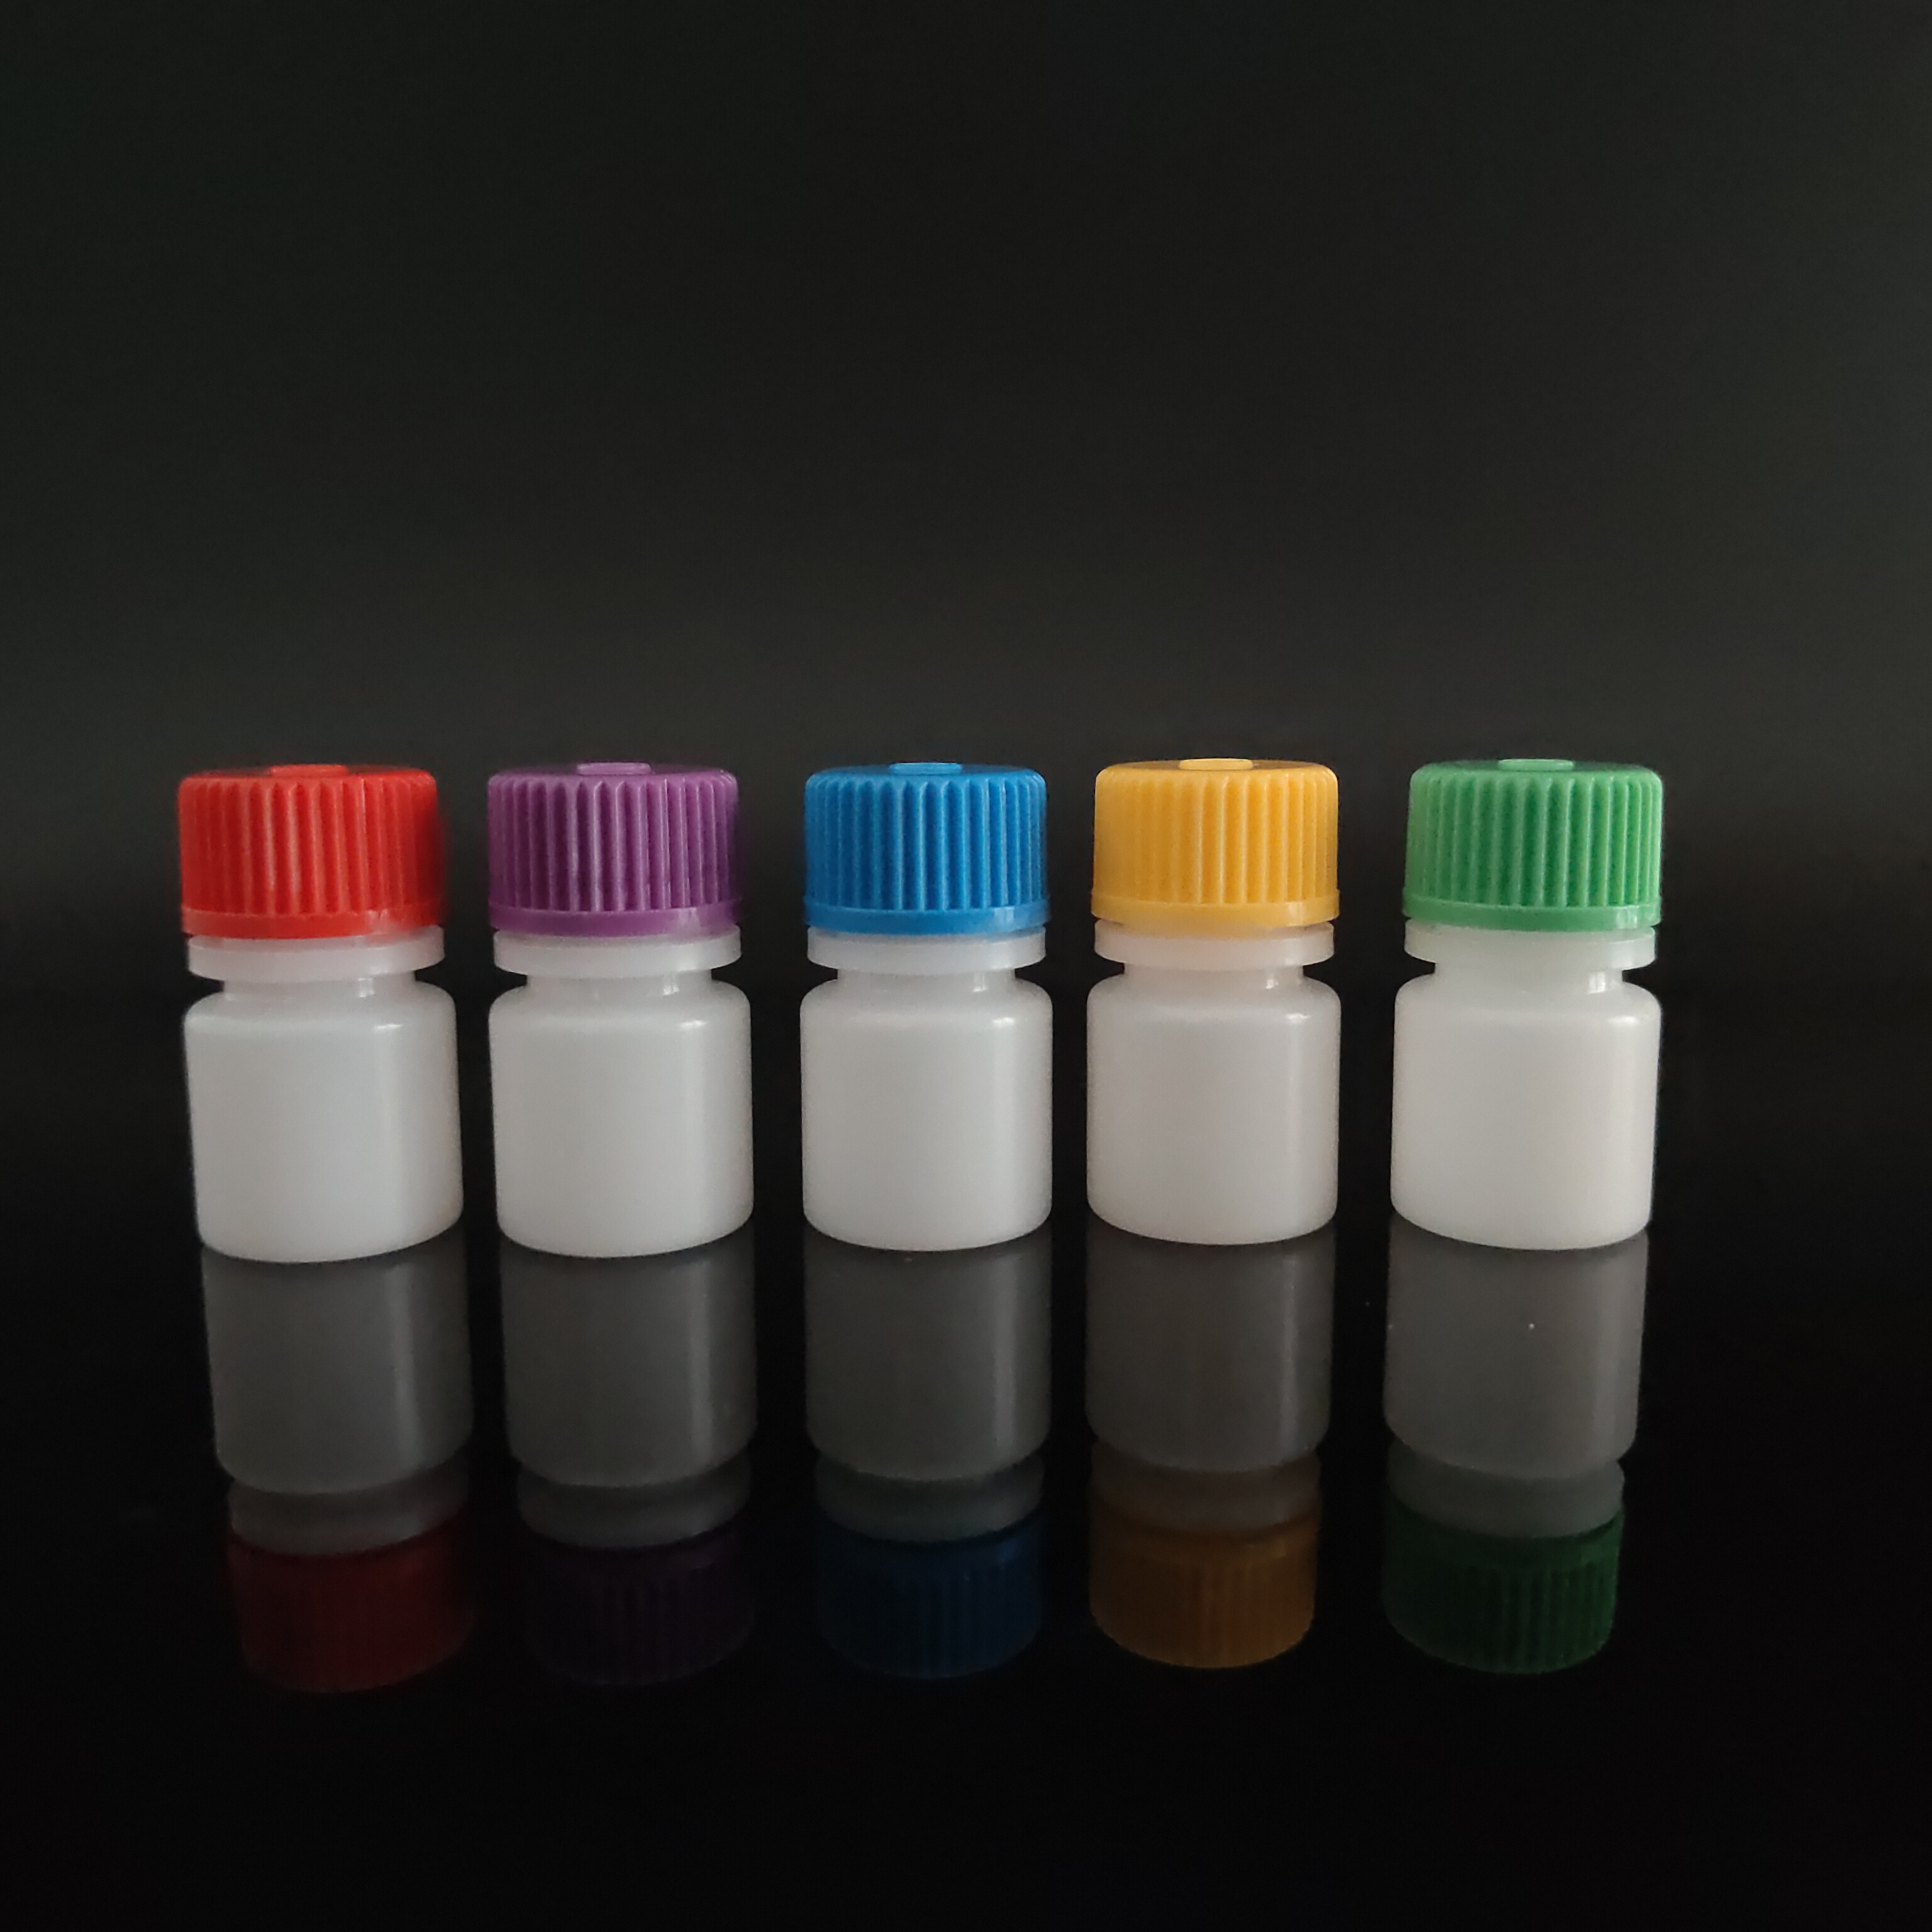 בקבוקי מגיב מסוג HDPE/PP עם מכסה צבעוני, פה רחב/פה צר